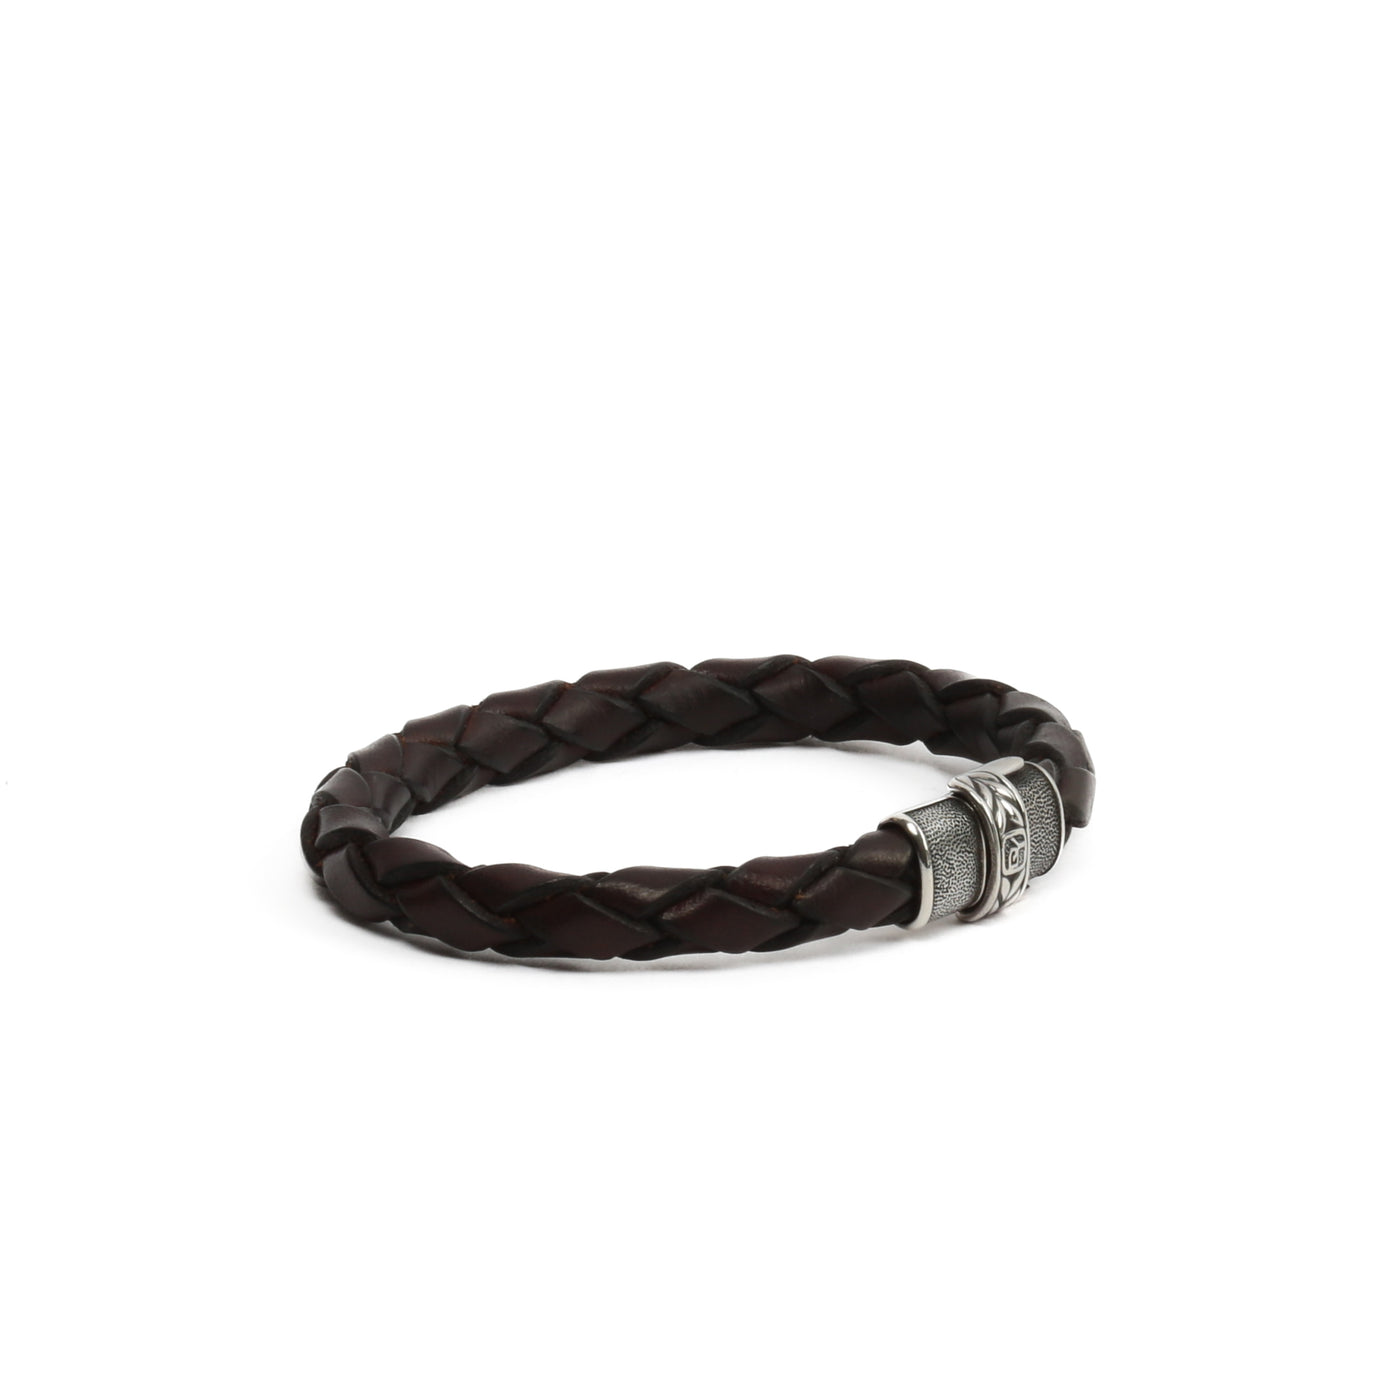 DAVID YURMAN Brown Leather Wrap Bracelet - FINAL SALE